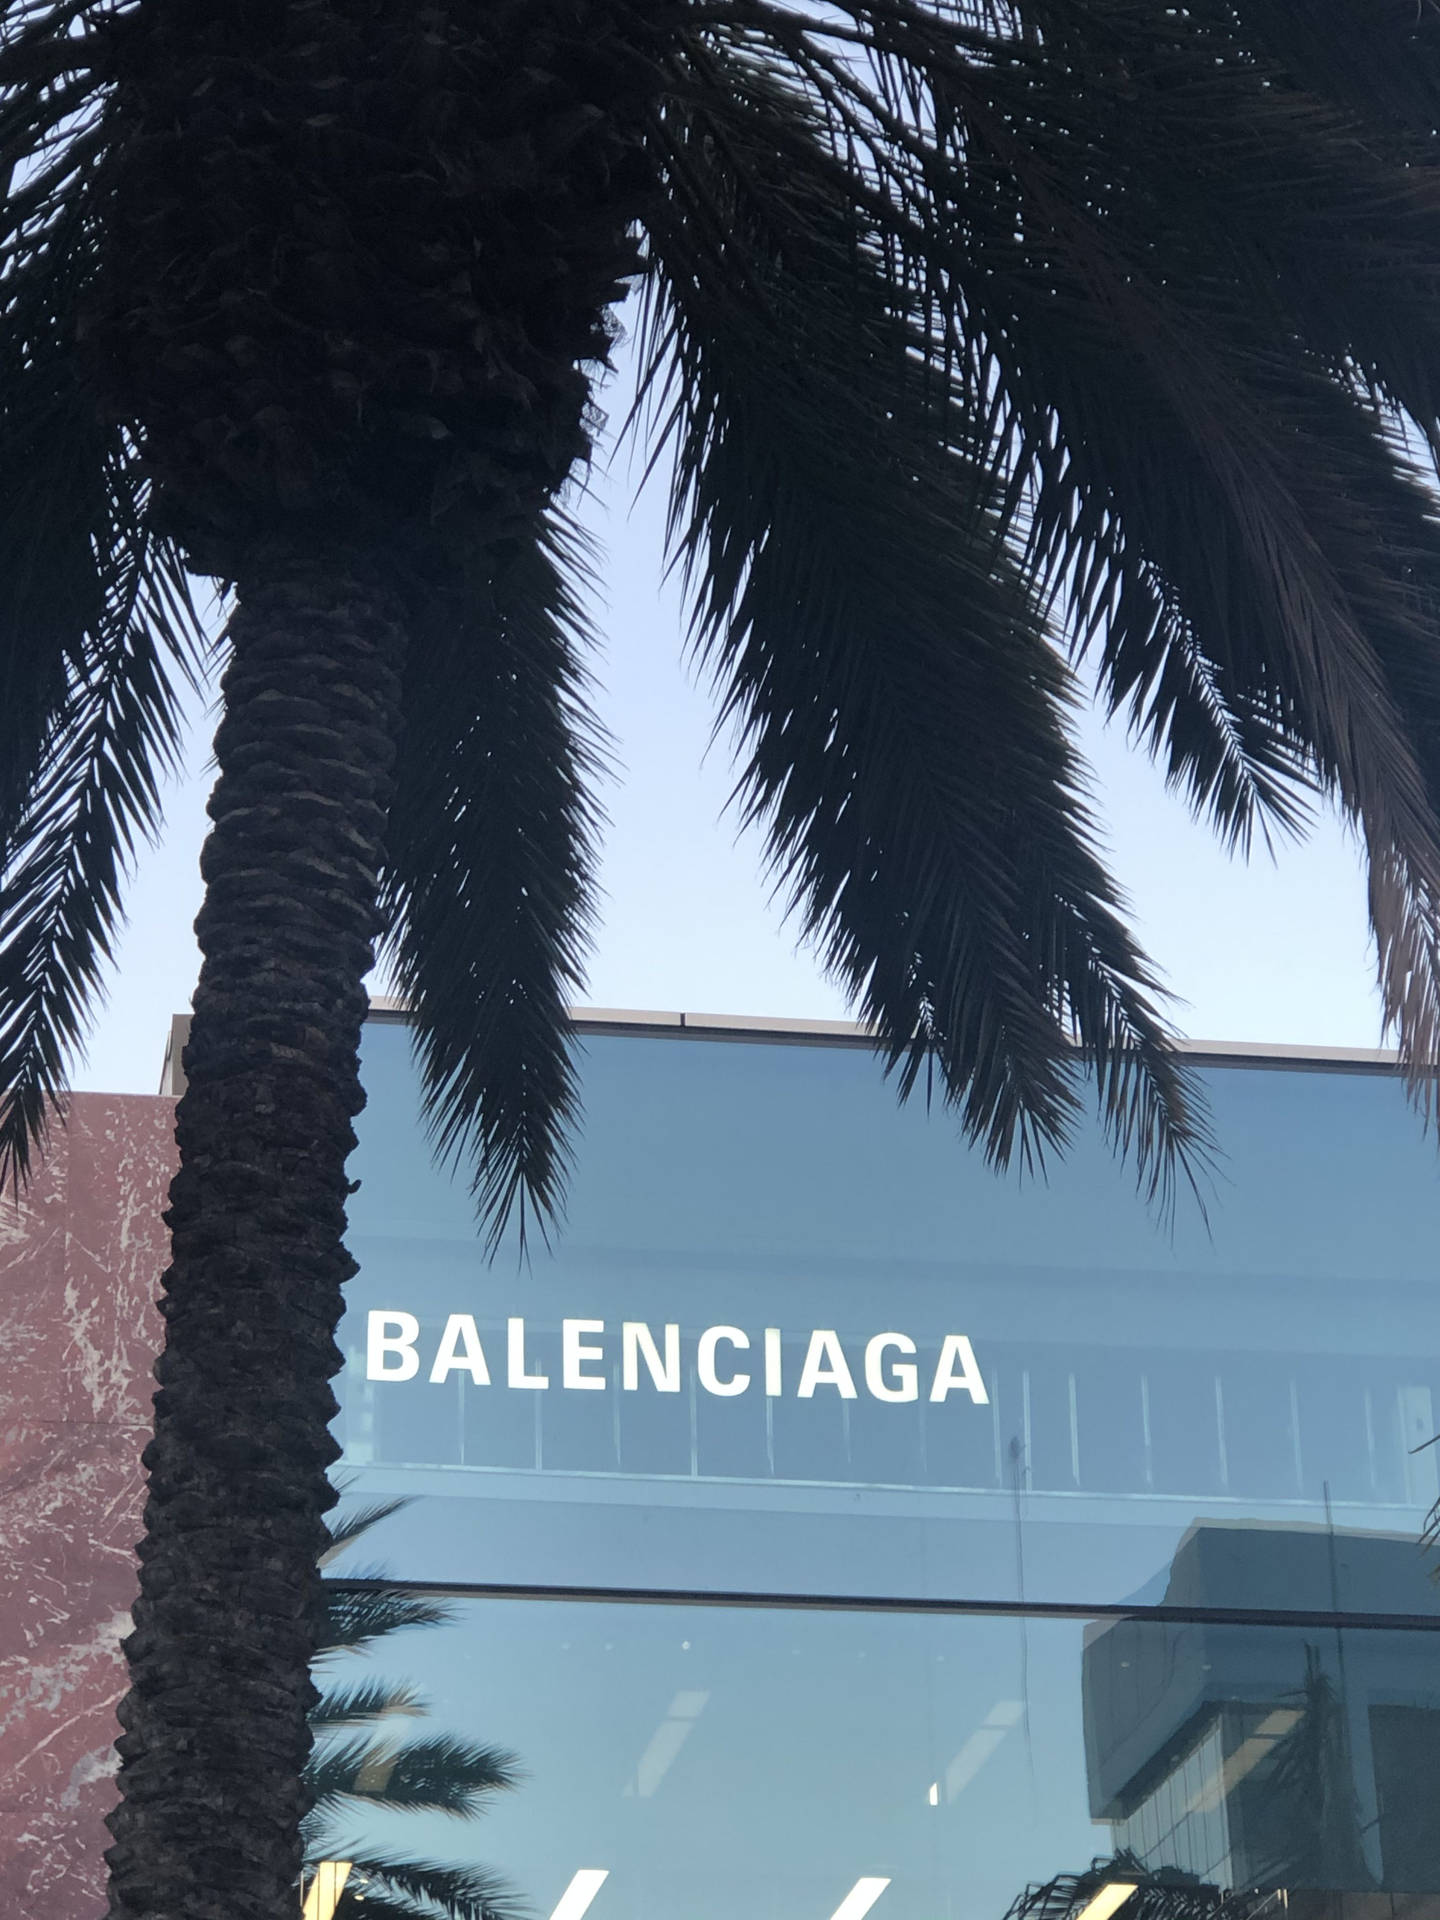 Balenciaga Office Building